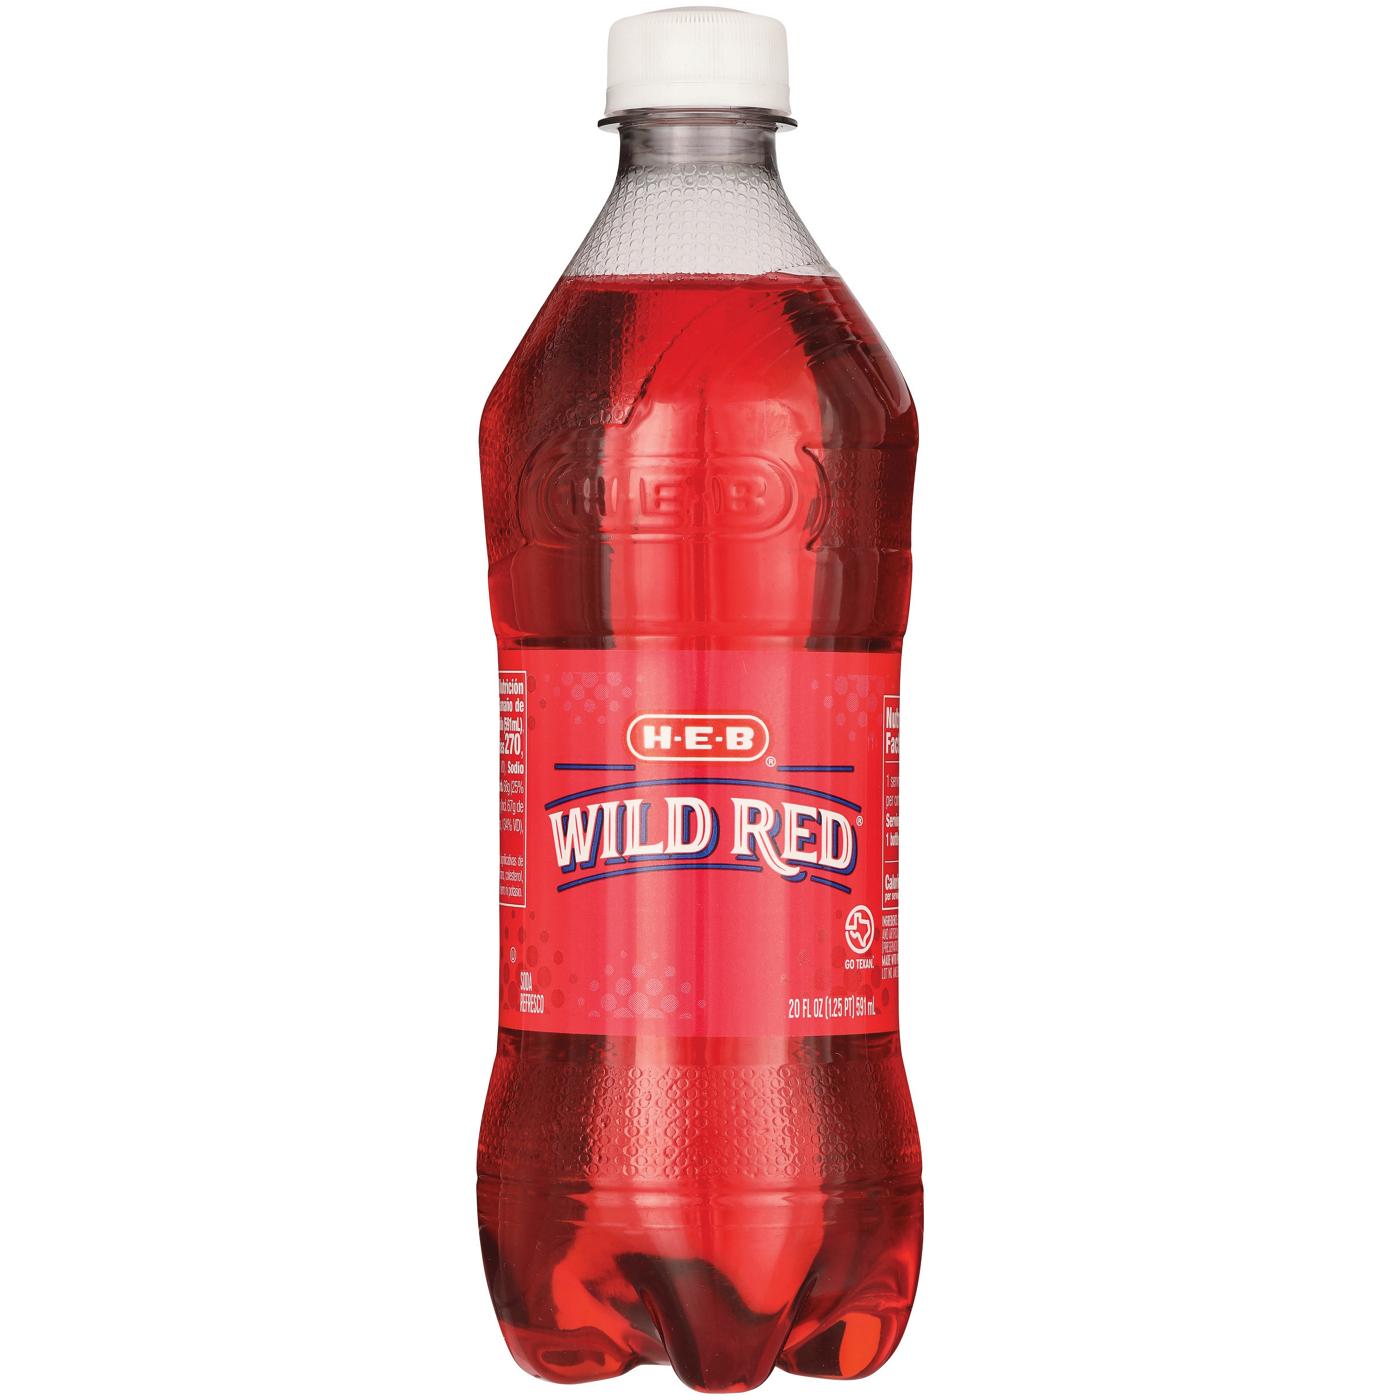 H-E-B Wild Red Soda; image 1 of 2